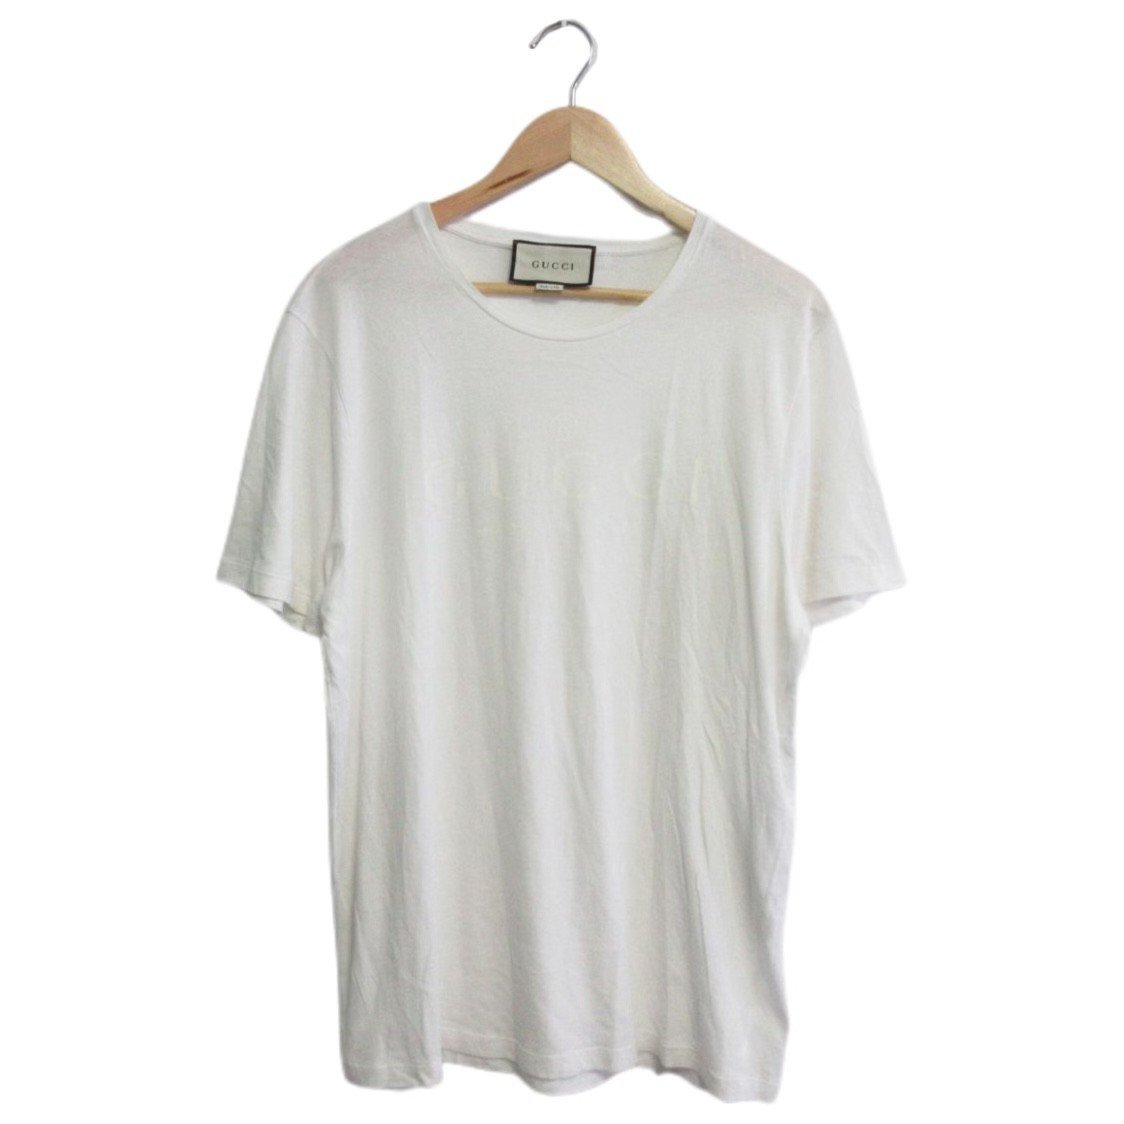 ほぼ美品 GUCCI グッチ 半袖 ロゴプリント クルーネック Tシャツ カットソー 大きいサイズ XXL 441685 ホワイト